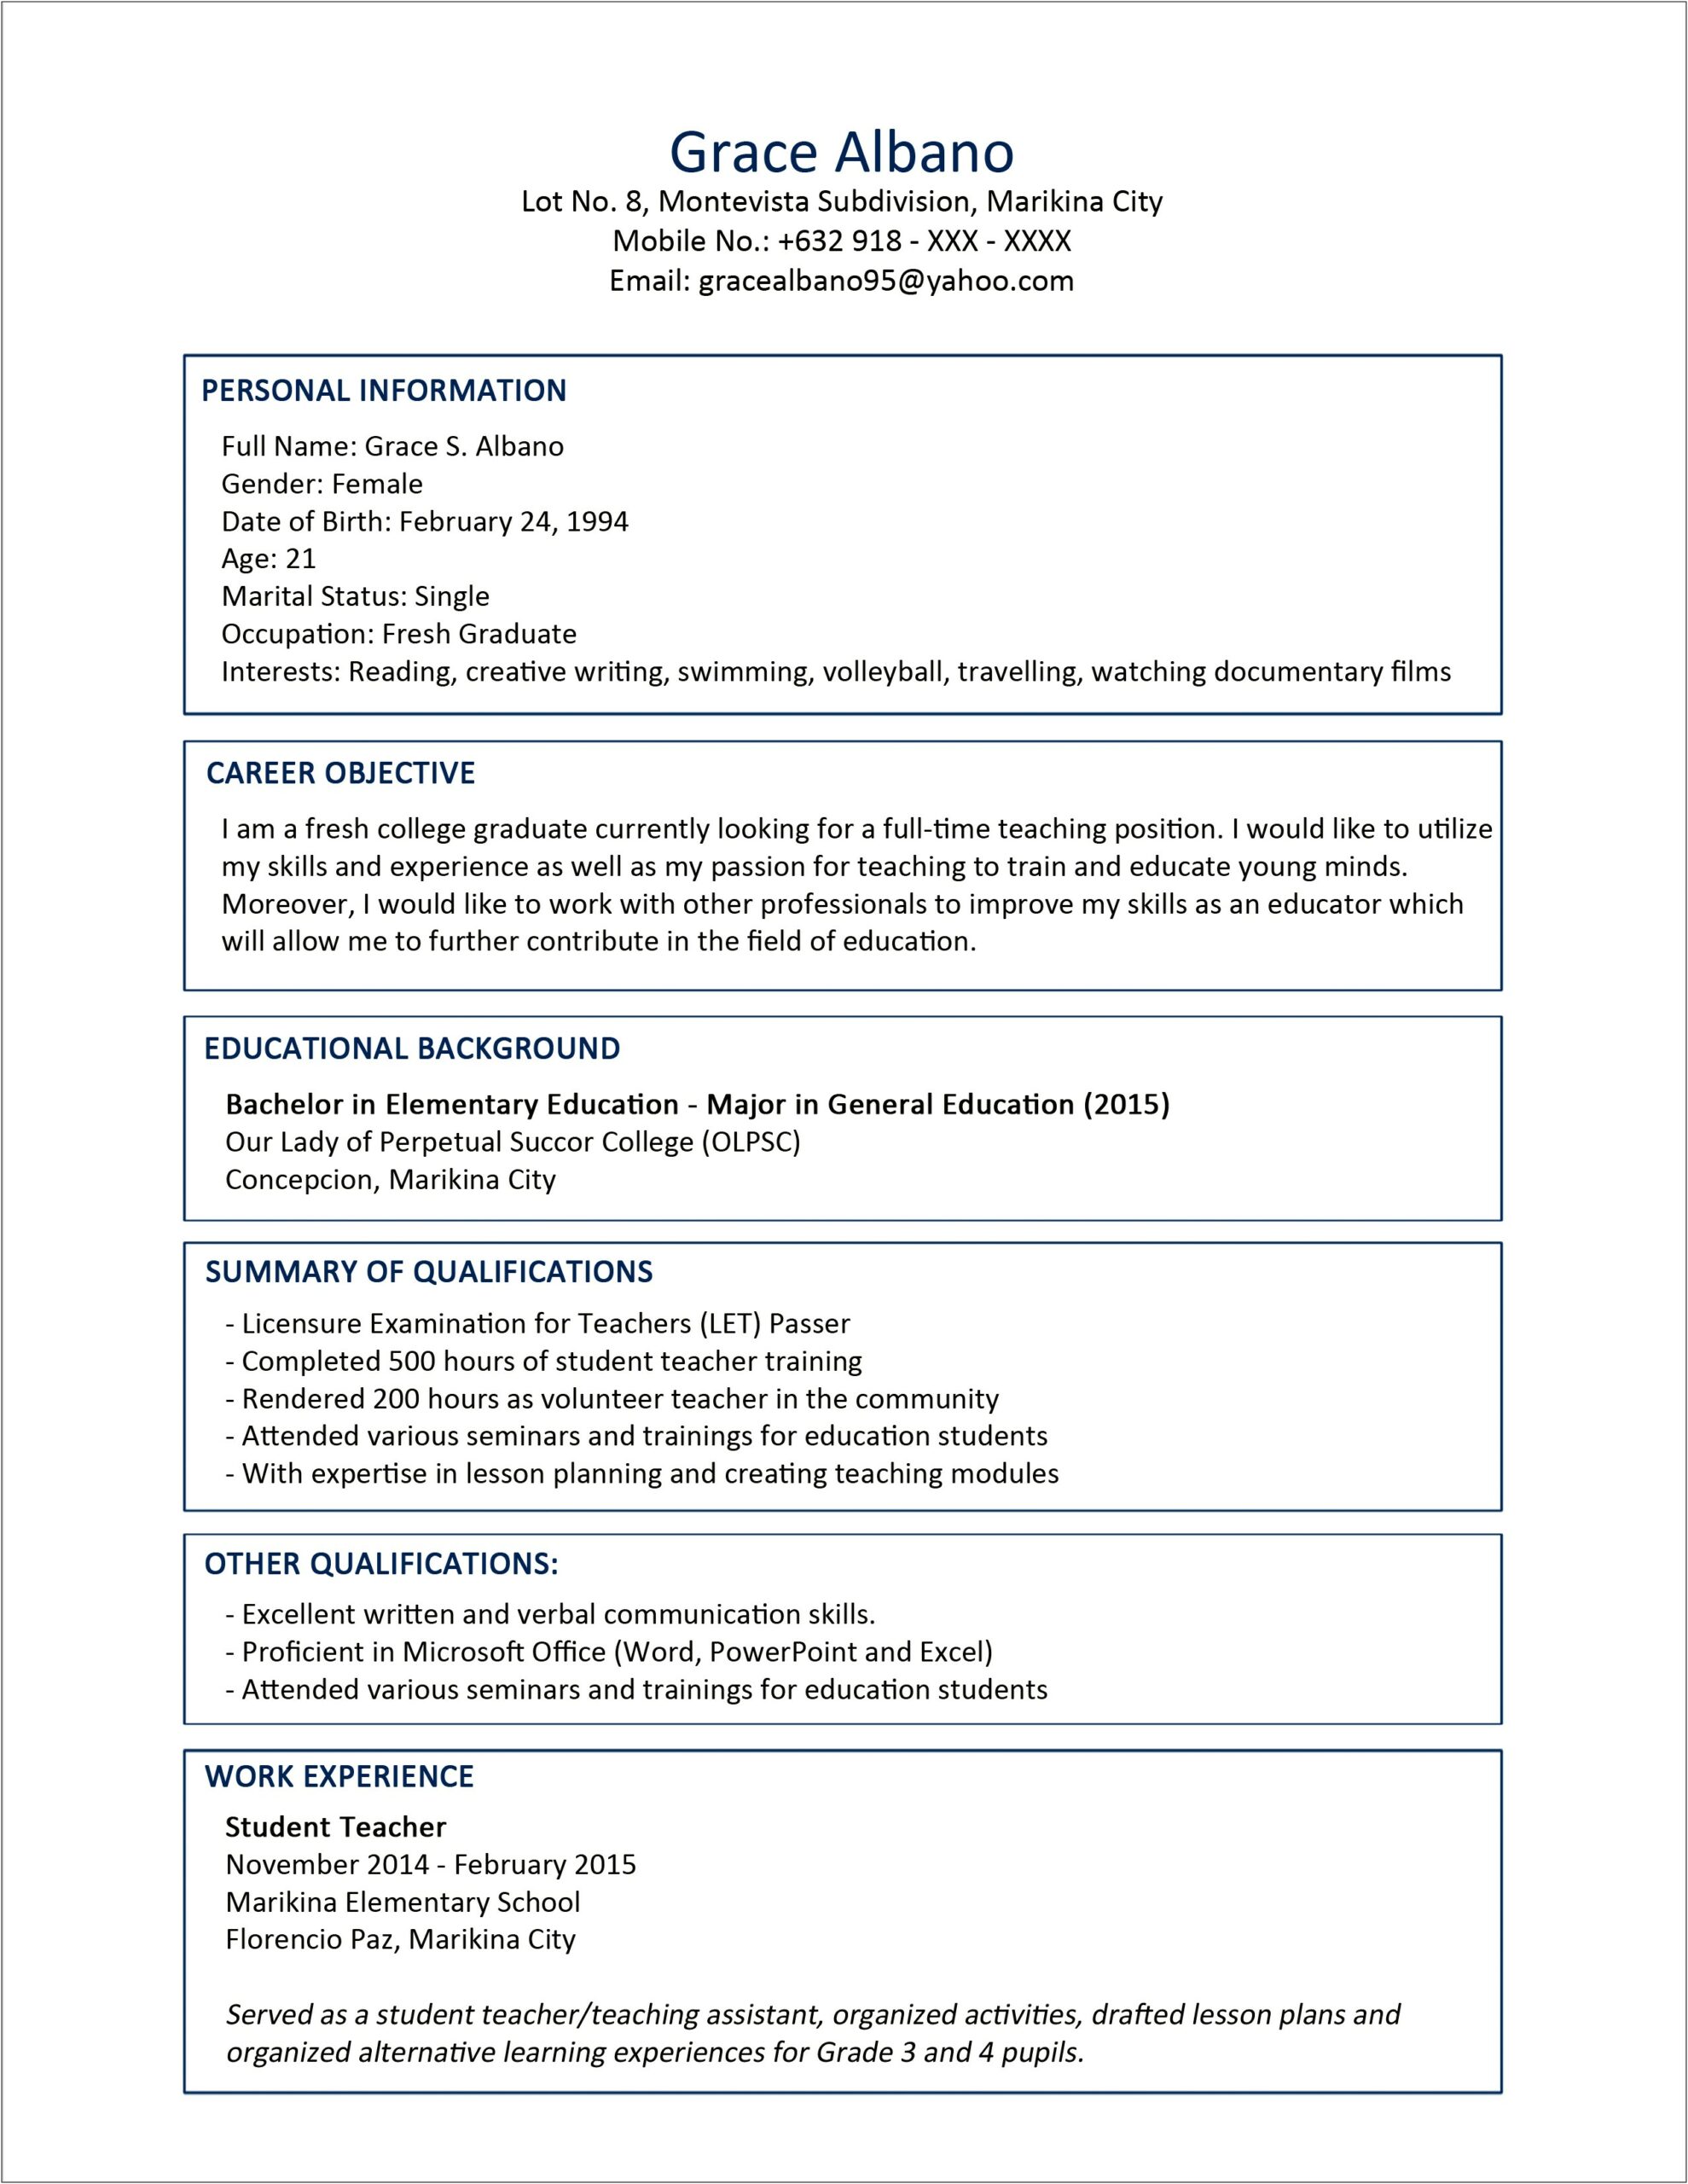 Sample Resume For Elementary Teacher Fresh Graduate